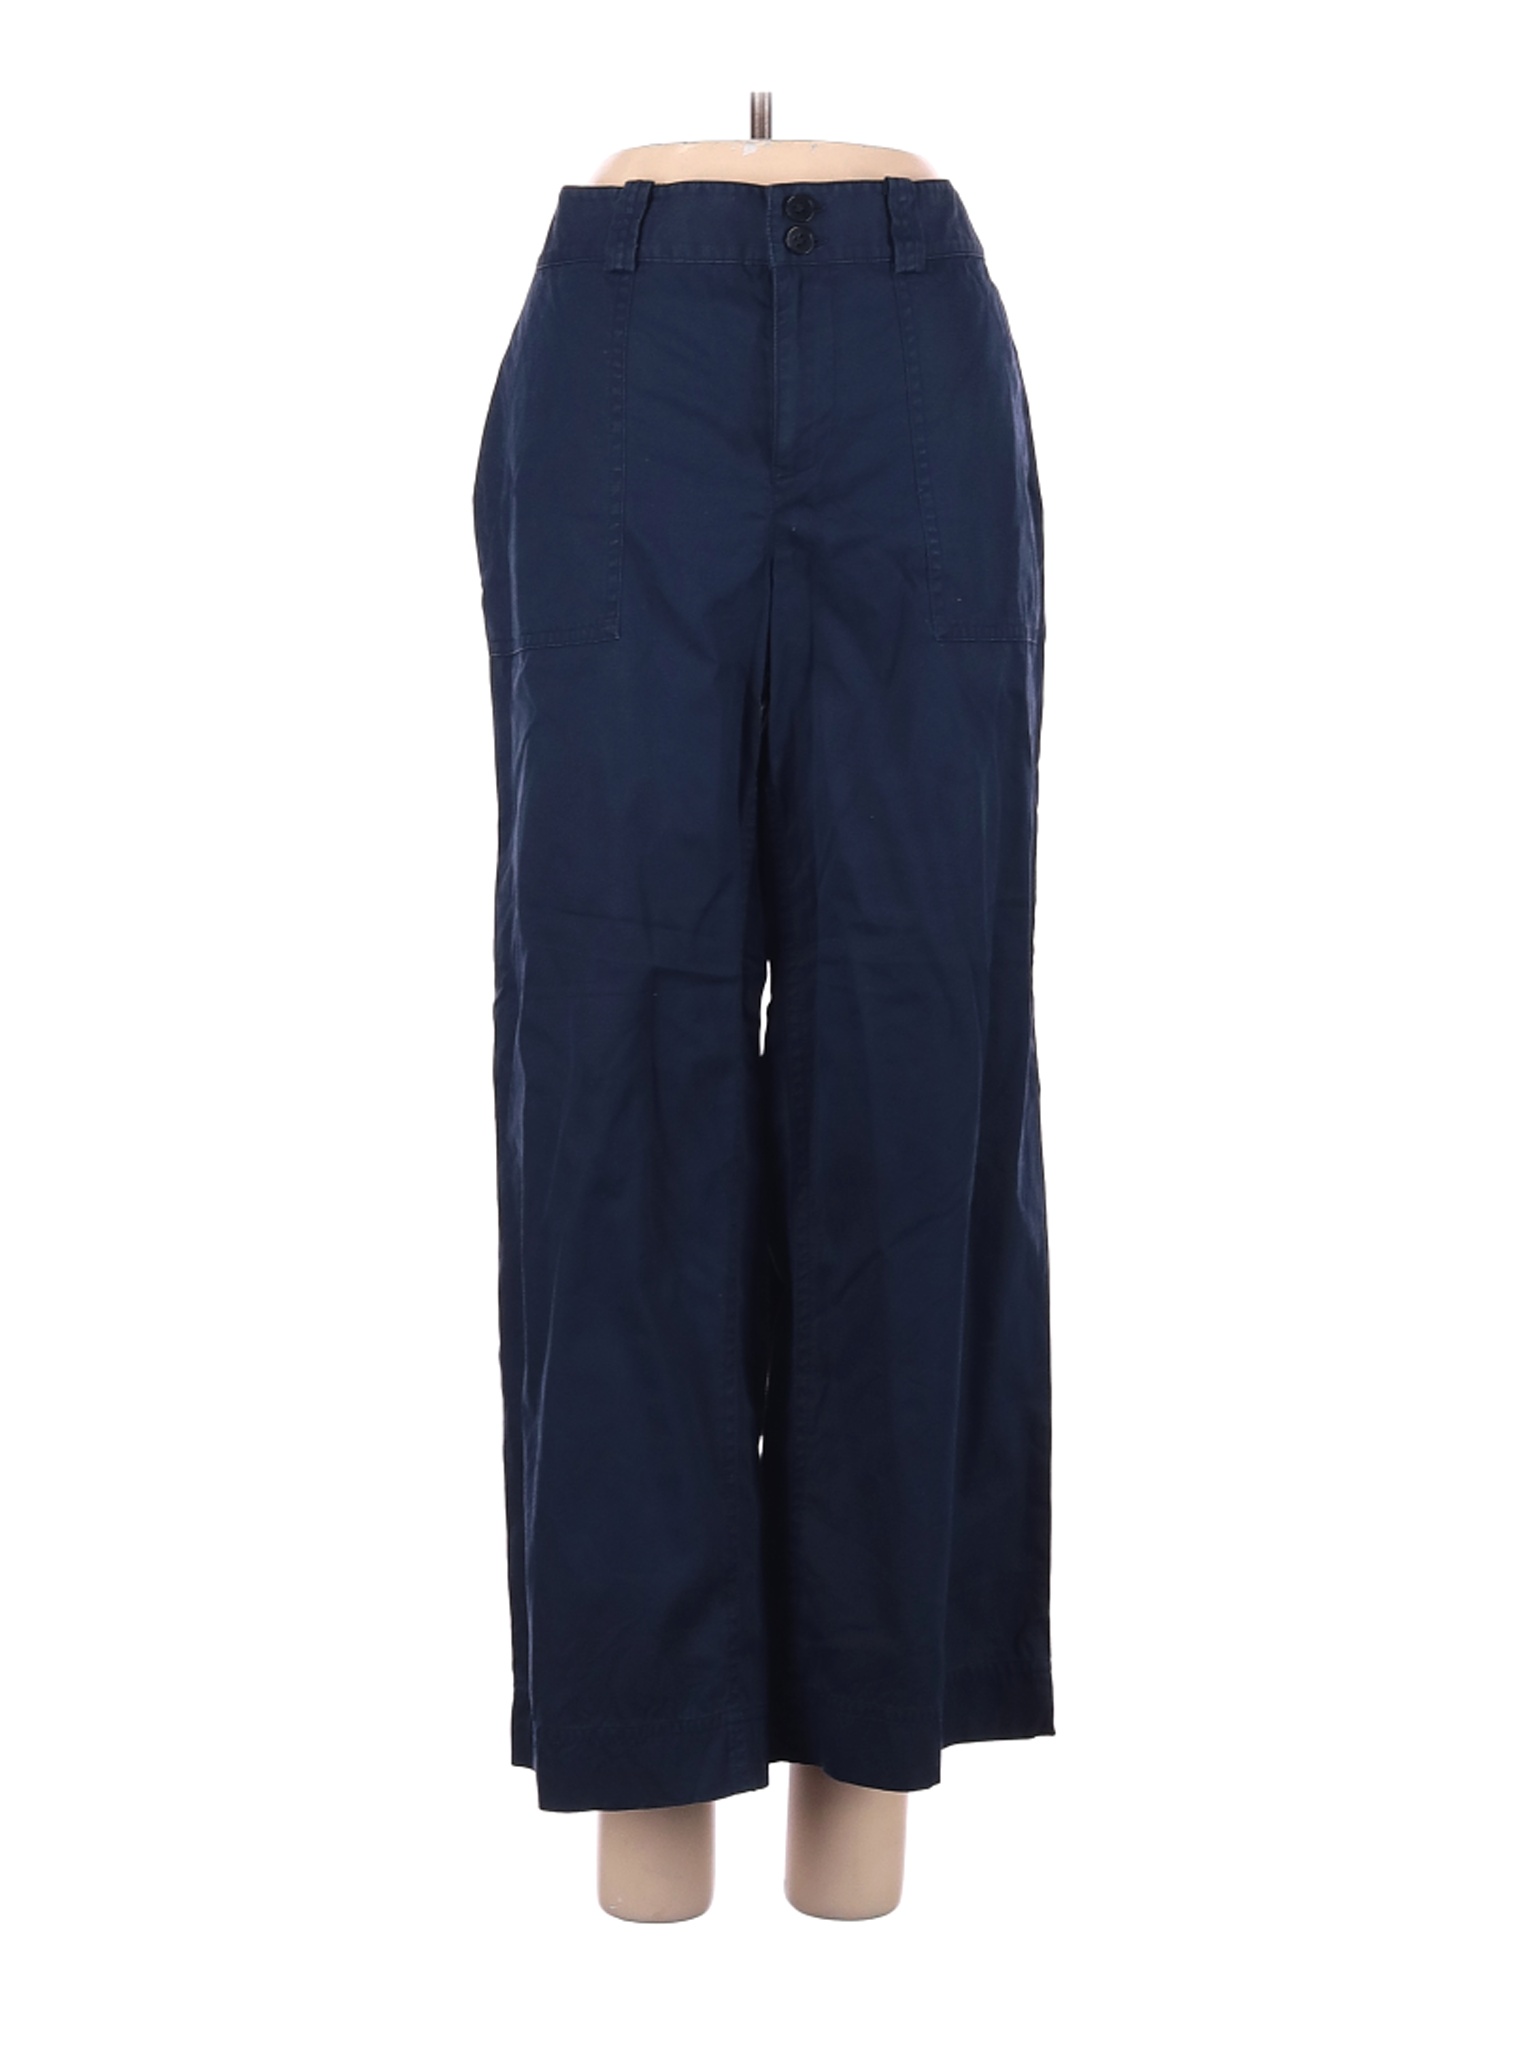 Lauren by Ralph Lauren Women Blue Casual Pants 4 Petites | eBay